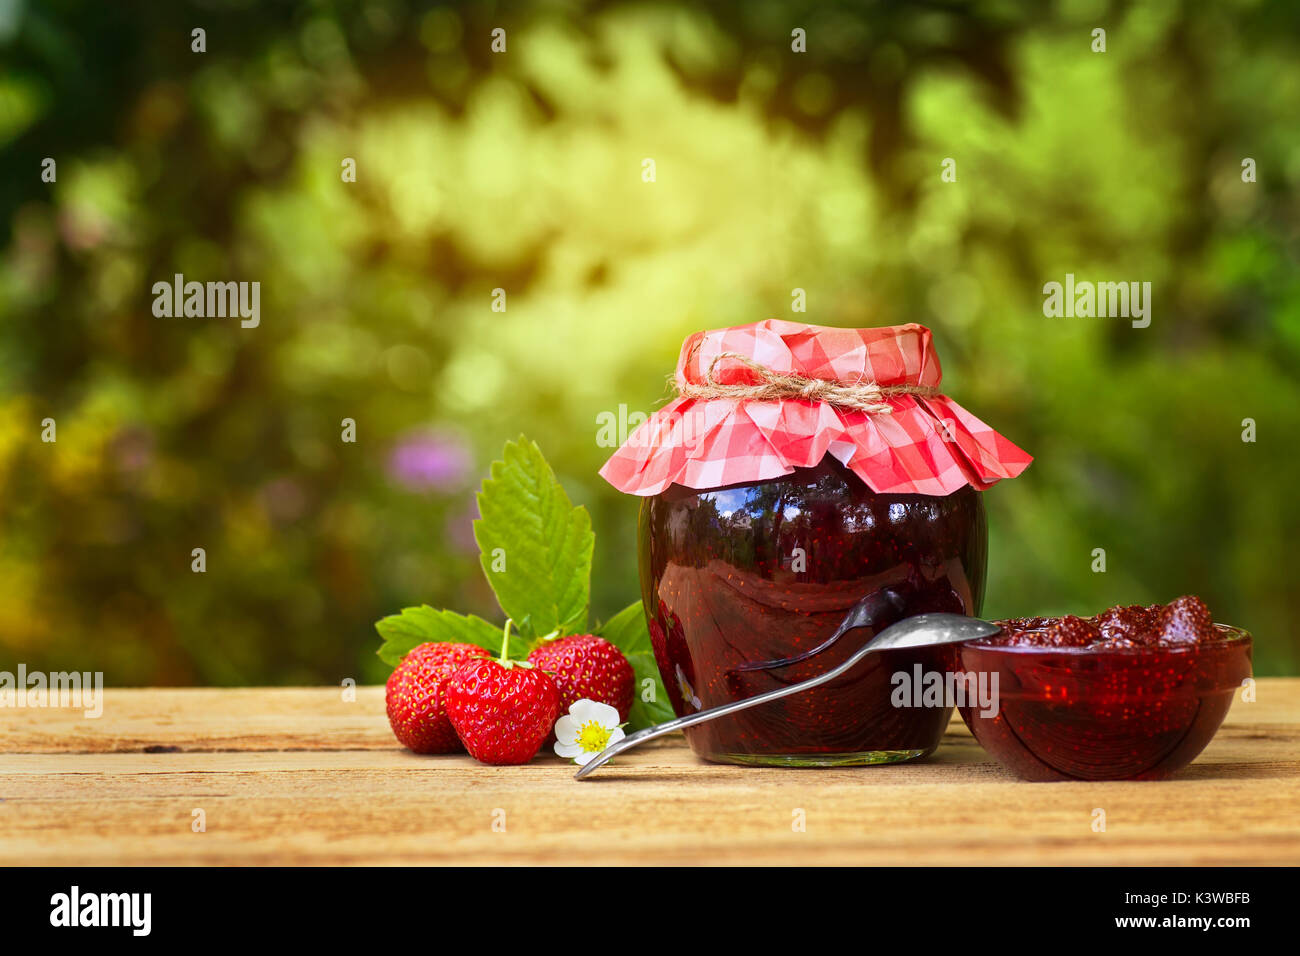 La confiture de fraise sur la table outdoor Banque D'Images